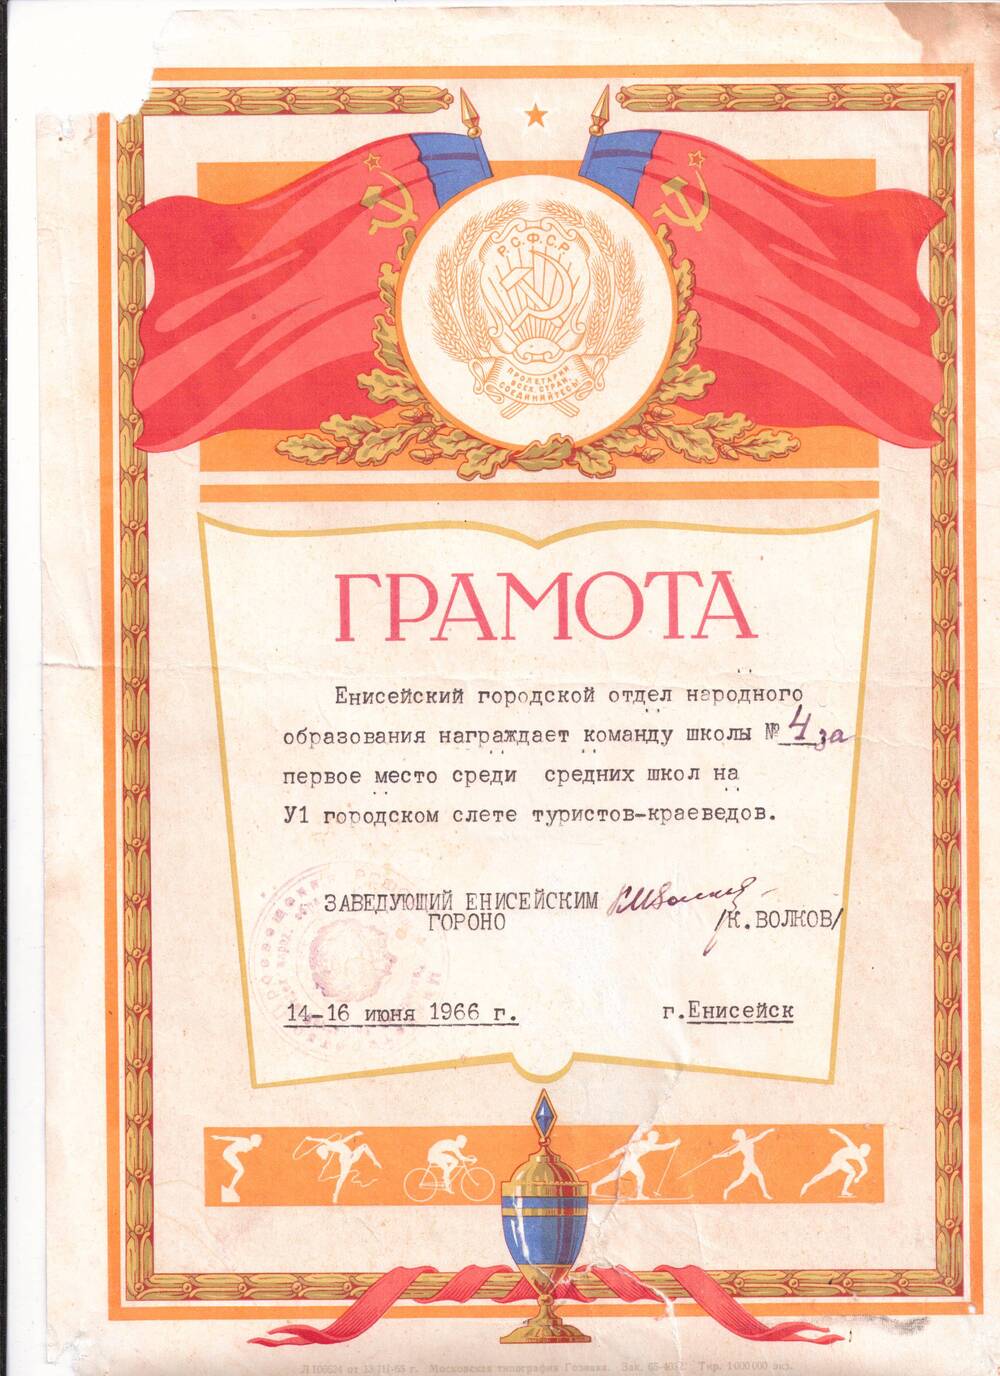 Грамота награждается команда школы №4 за 1 место среди средних школ на VI городском слете туристов-краеведов., г. Енисейск, 14-16 июня 1966 г.